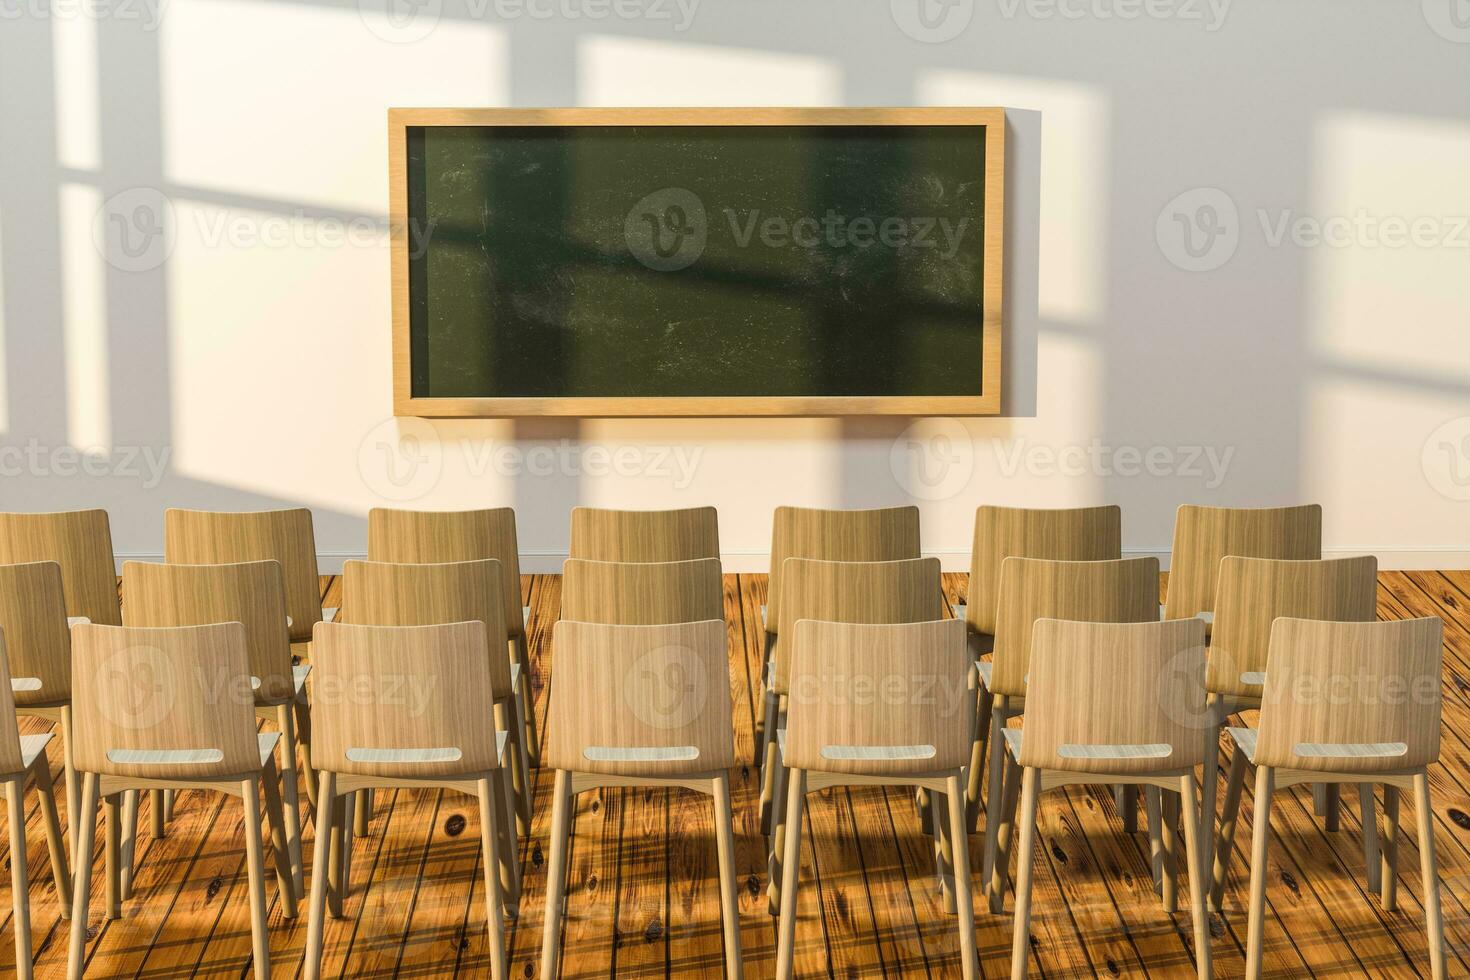 en klassrum med stolar inuti och en svarta tavlan i de främre av de rum, 3d tolkning. foto